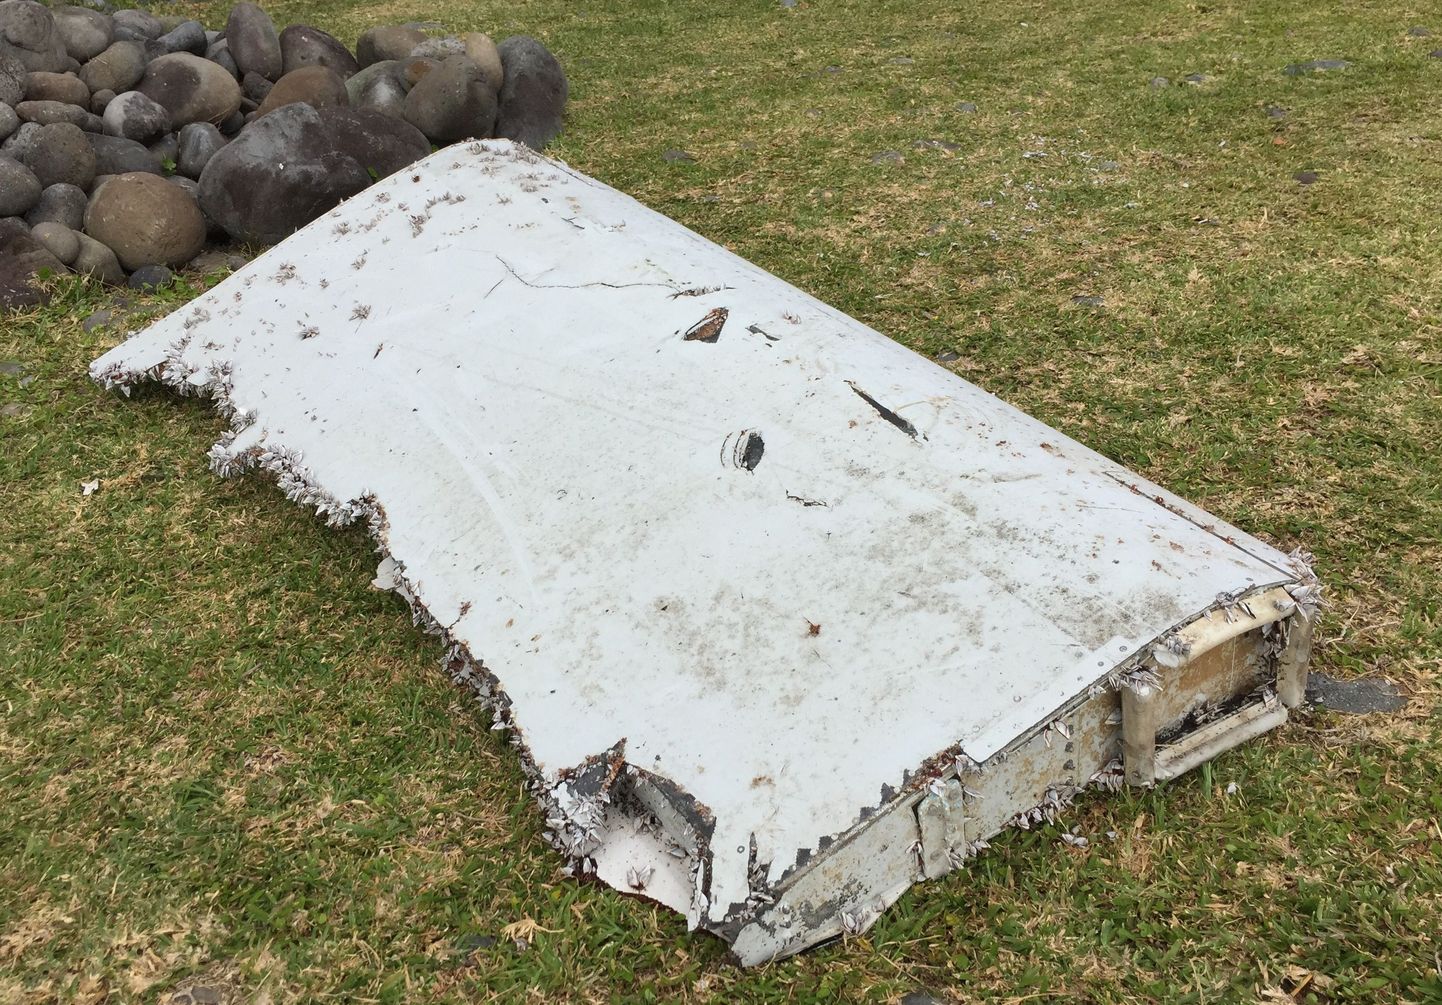 Фрагмент самолетного крыла, найденный на острове Реюньон в Индийском океане, является частью пропавшего самолета рейса МН370.